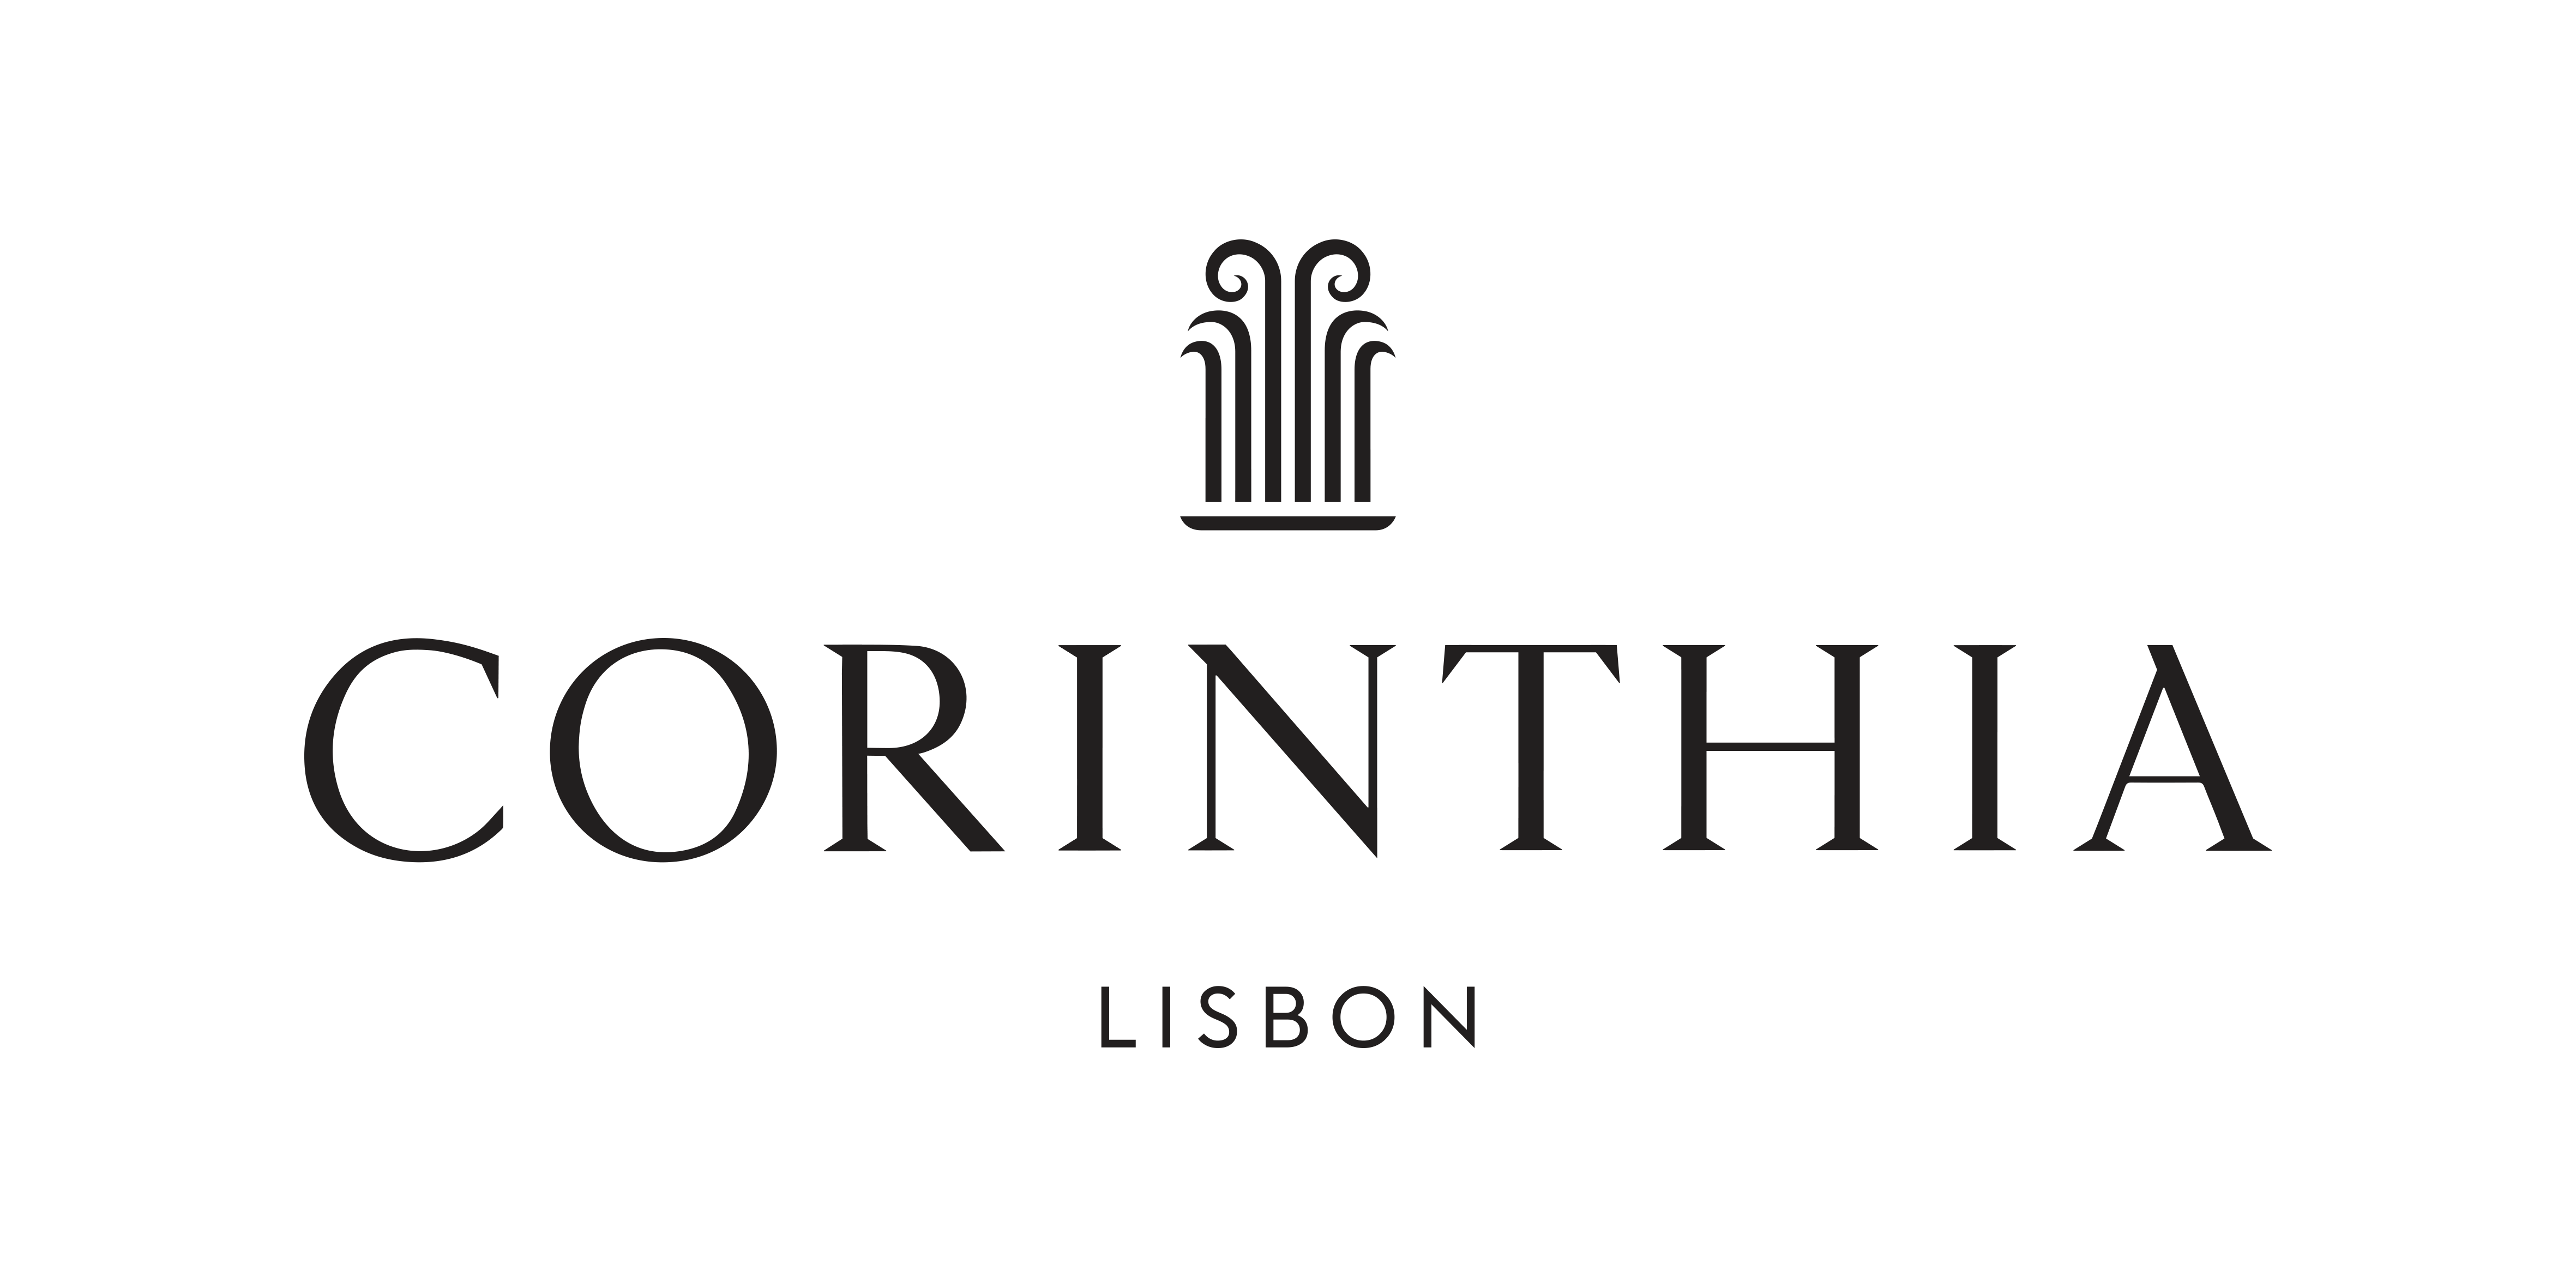 Corinthia Lisbon logo